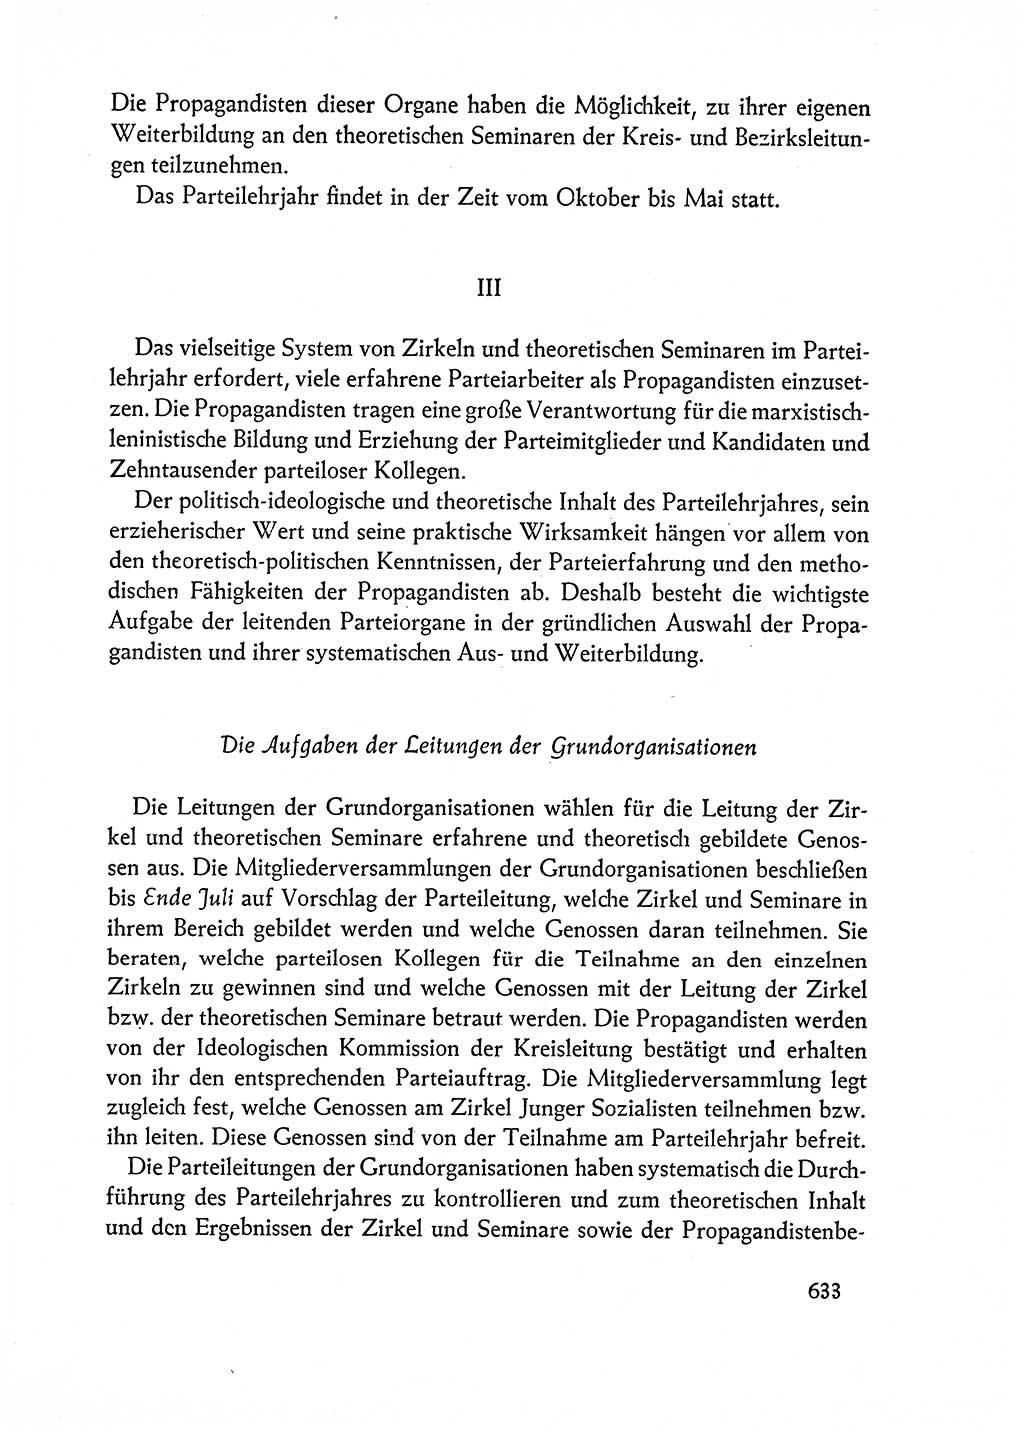 Dokumente der Sozialistischen Einheitspartei Deutschlands (SED) [Deutsche Demokratische Republik (DDR)] 1962-1963, Seite 633 (Dok. SED DDR 1962-1963, S. 633)